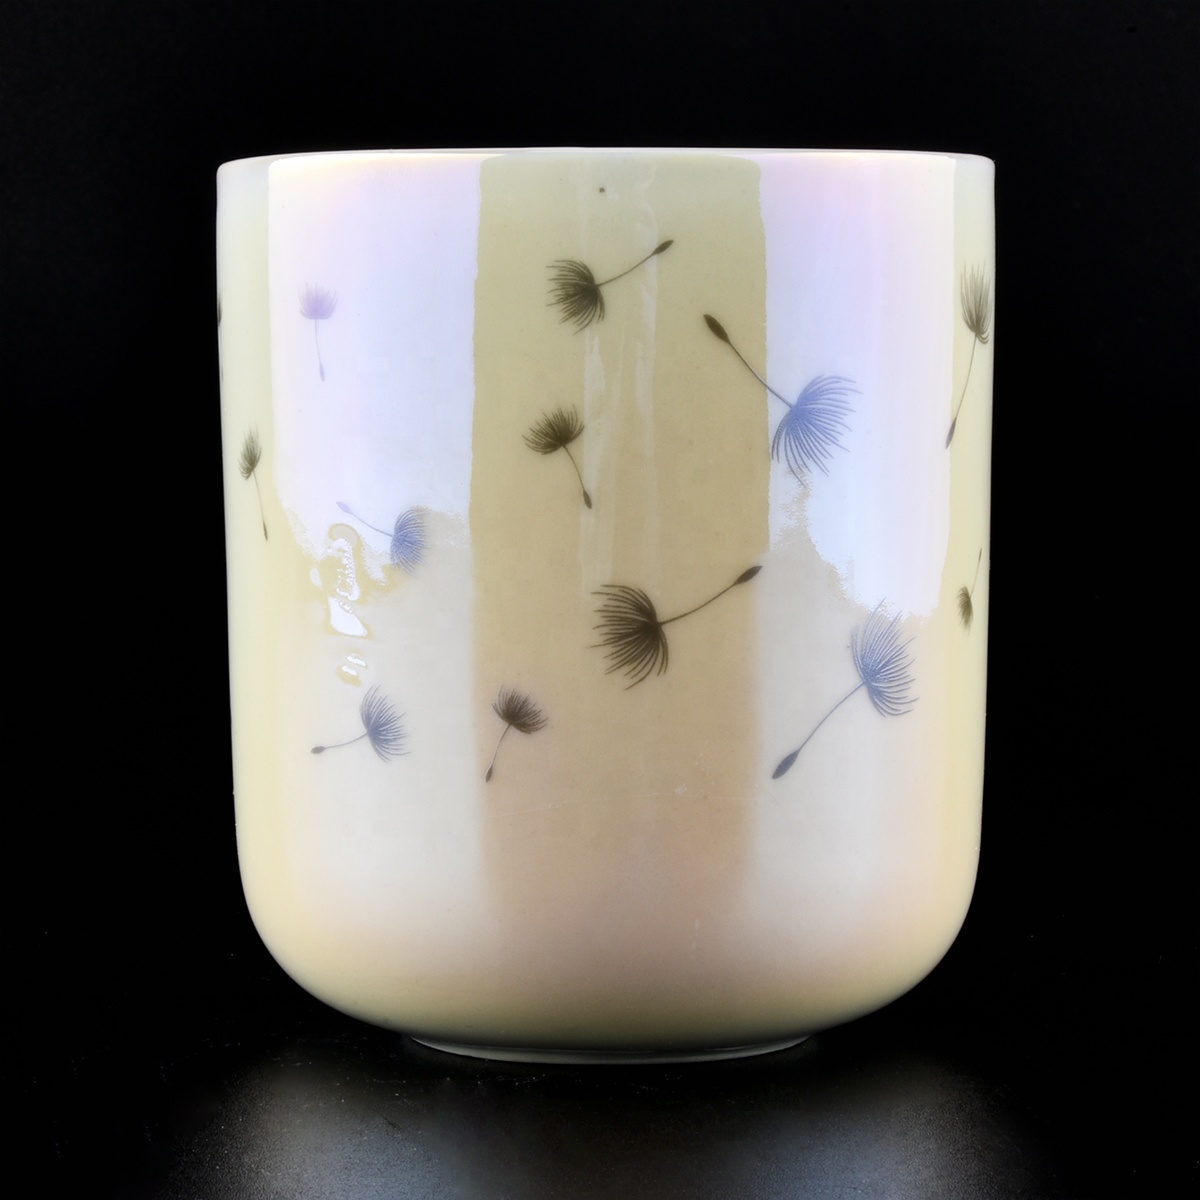 10oz Iridescent ceramic White Ceramic Candle jars wholesale